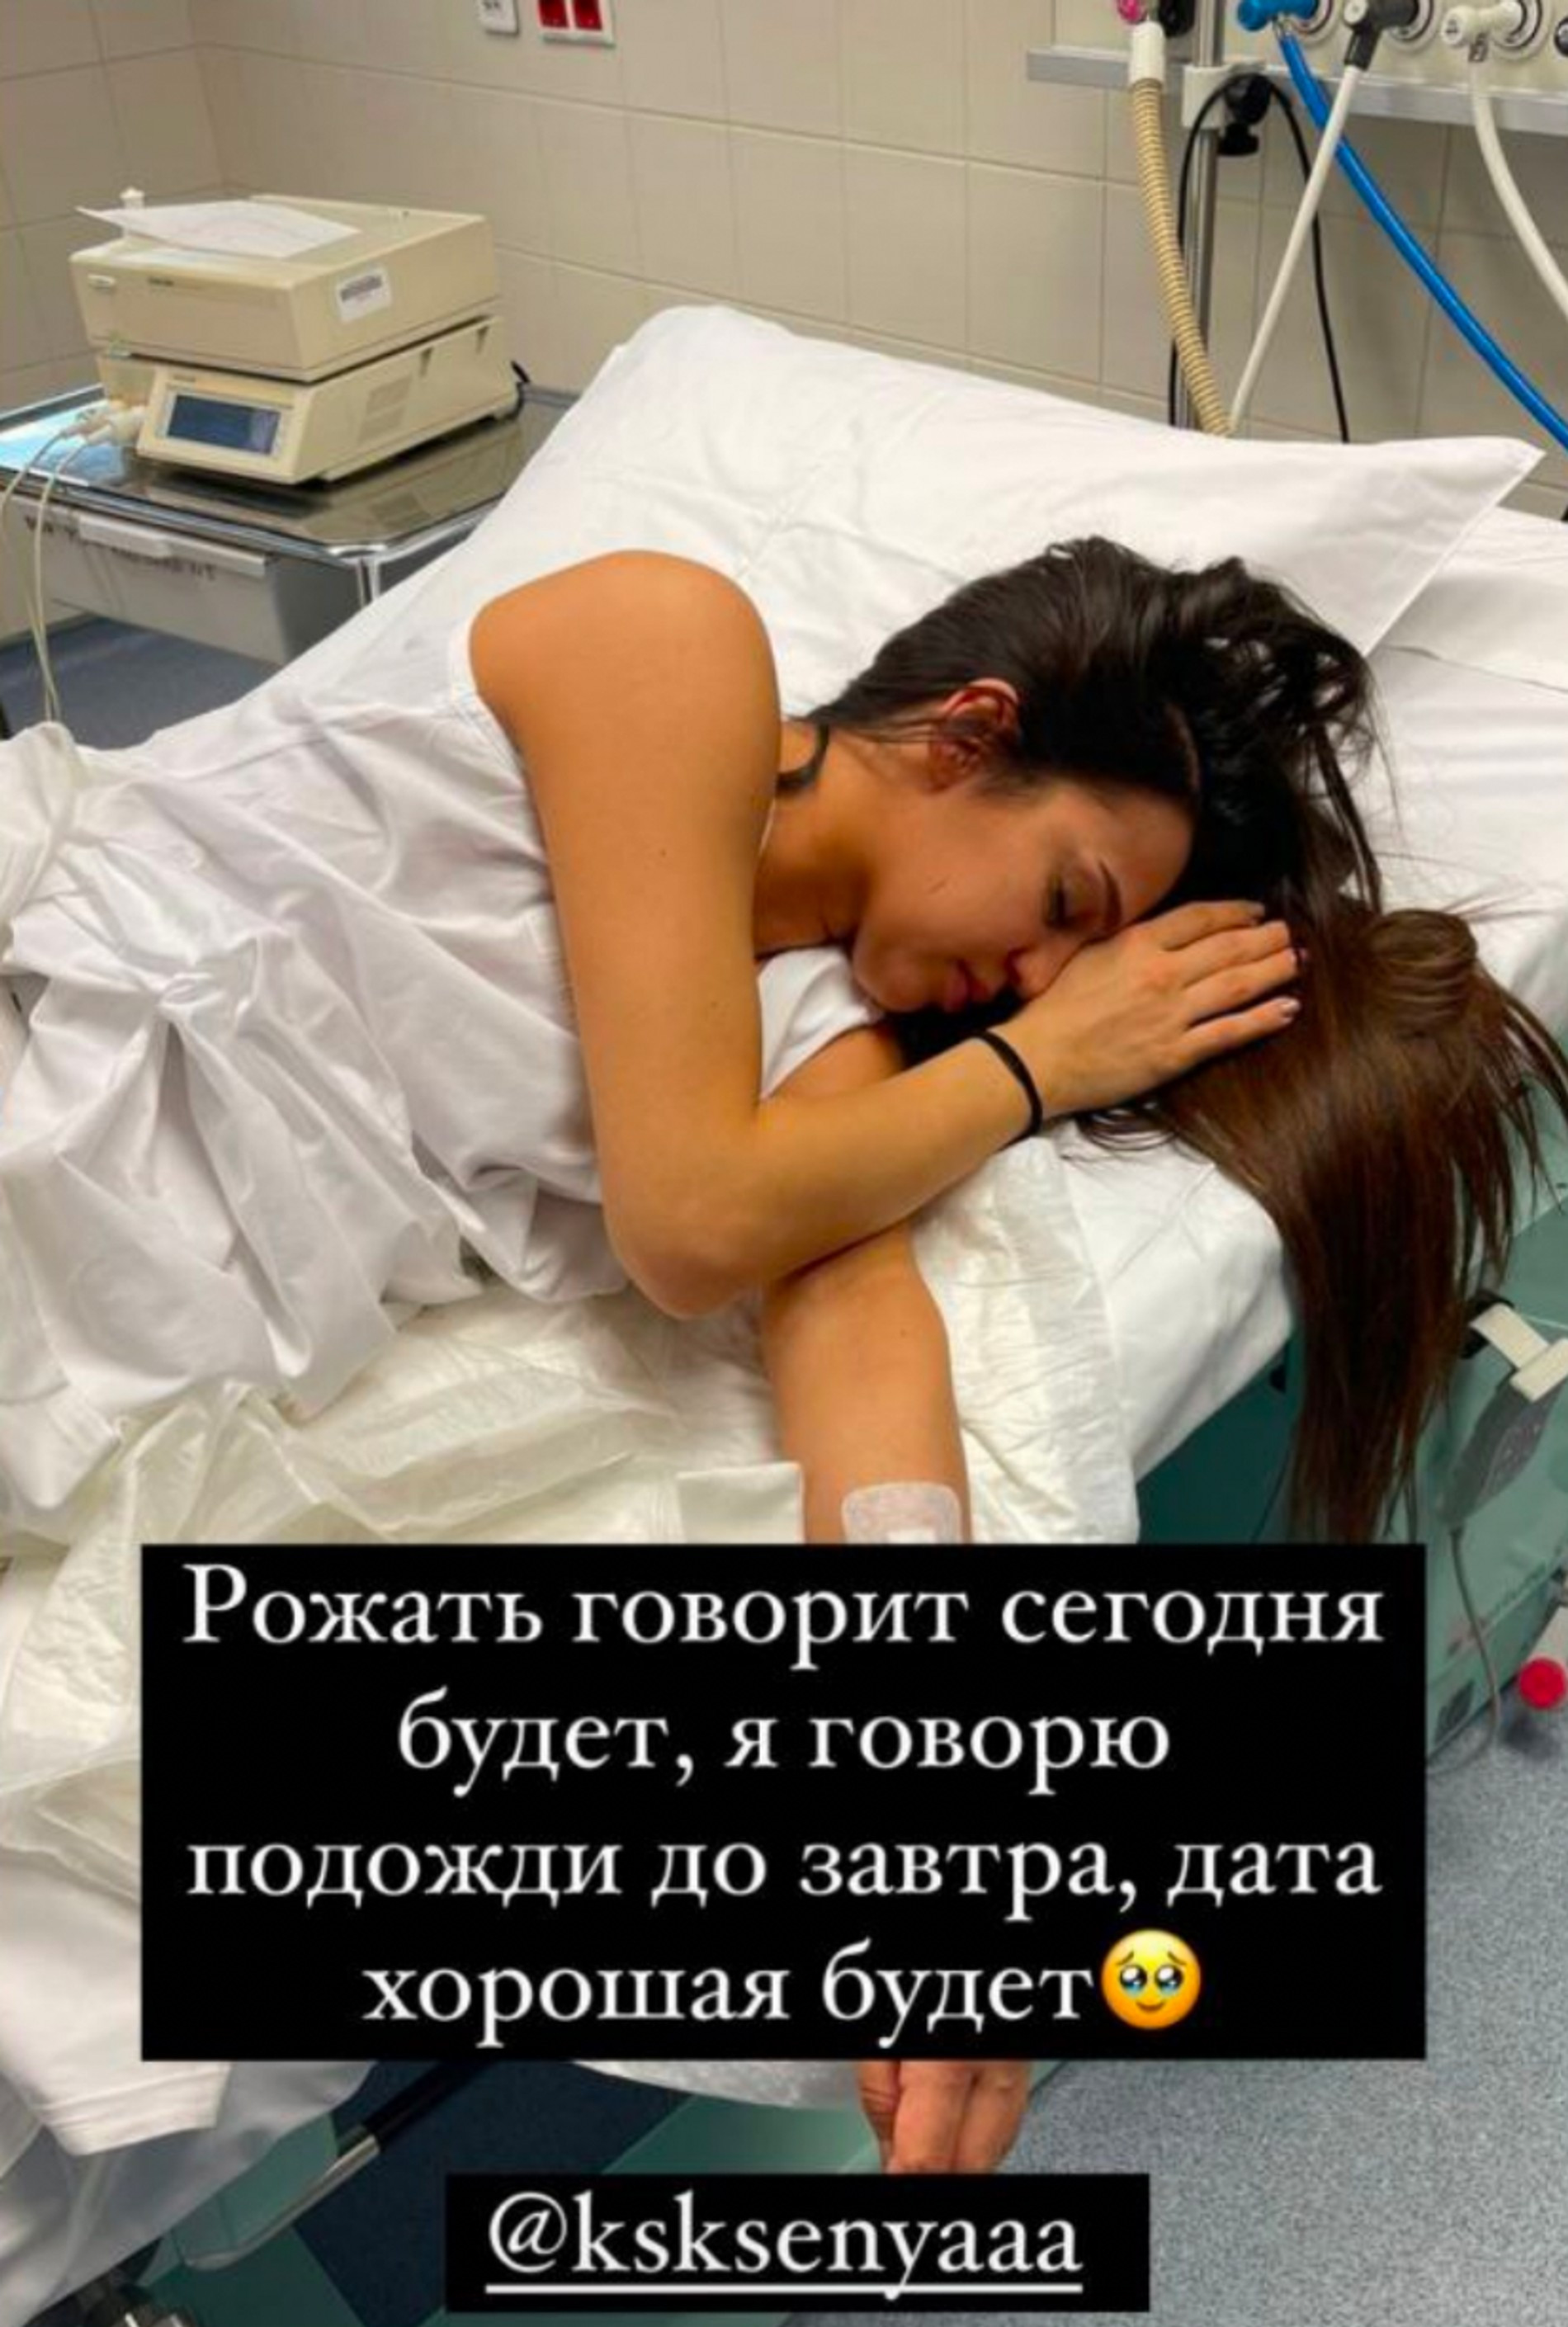 Жена Леши Свика Ксения готовится к родам
Фото: Инстаграм (запрещен в РФ) Леши Свика